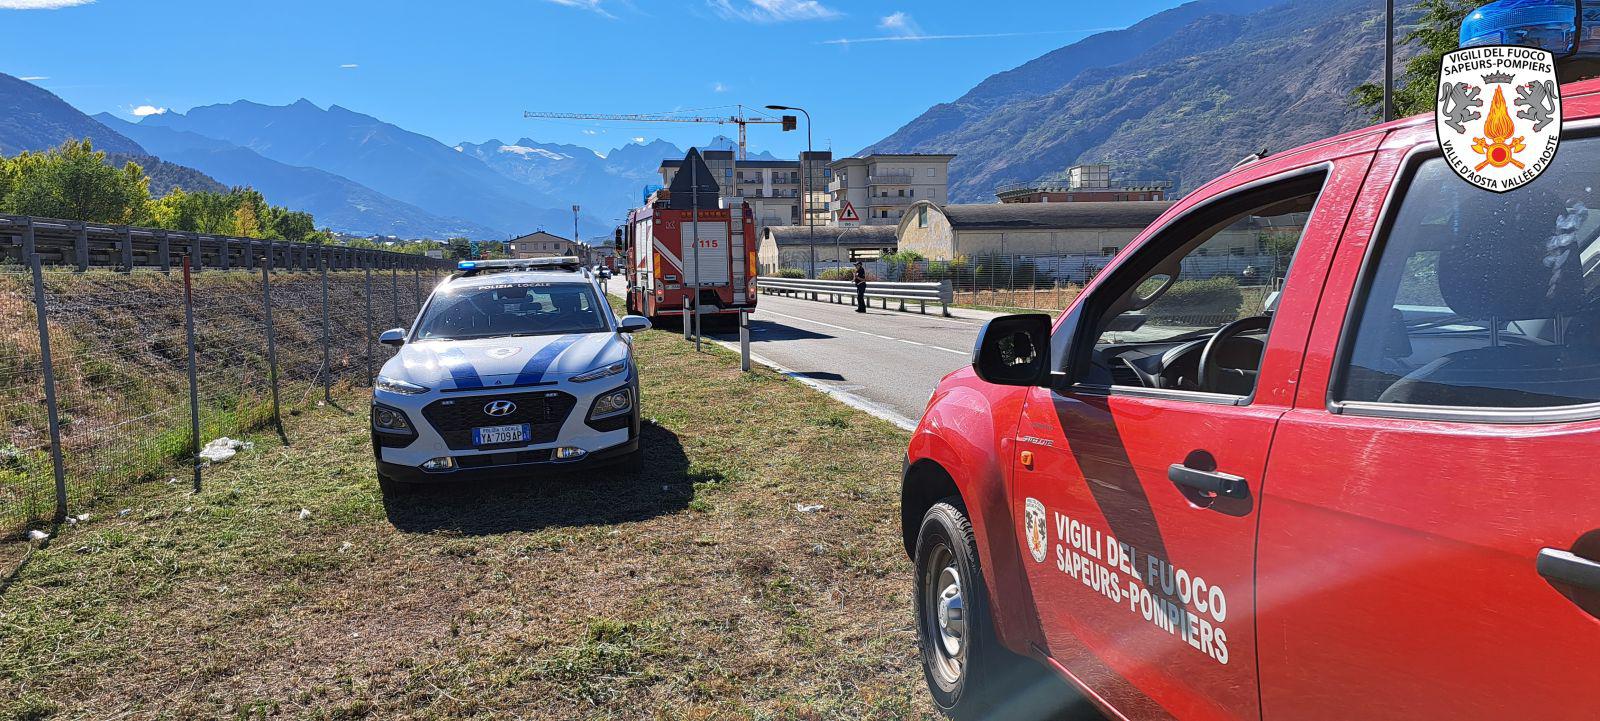 Aosta: sterpaglie lungo la A5 in fiamme, viabilità ripristinata